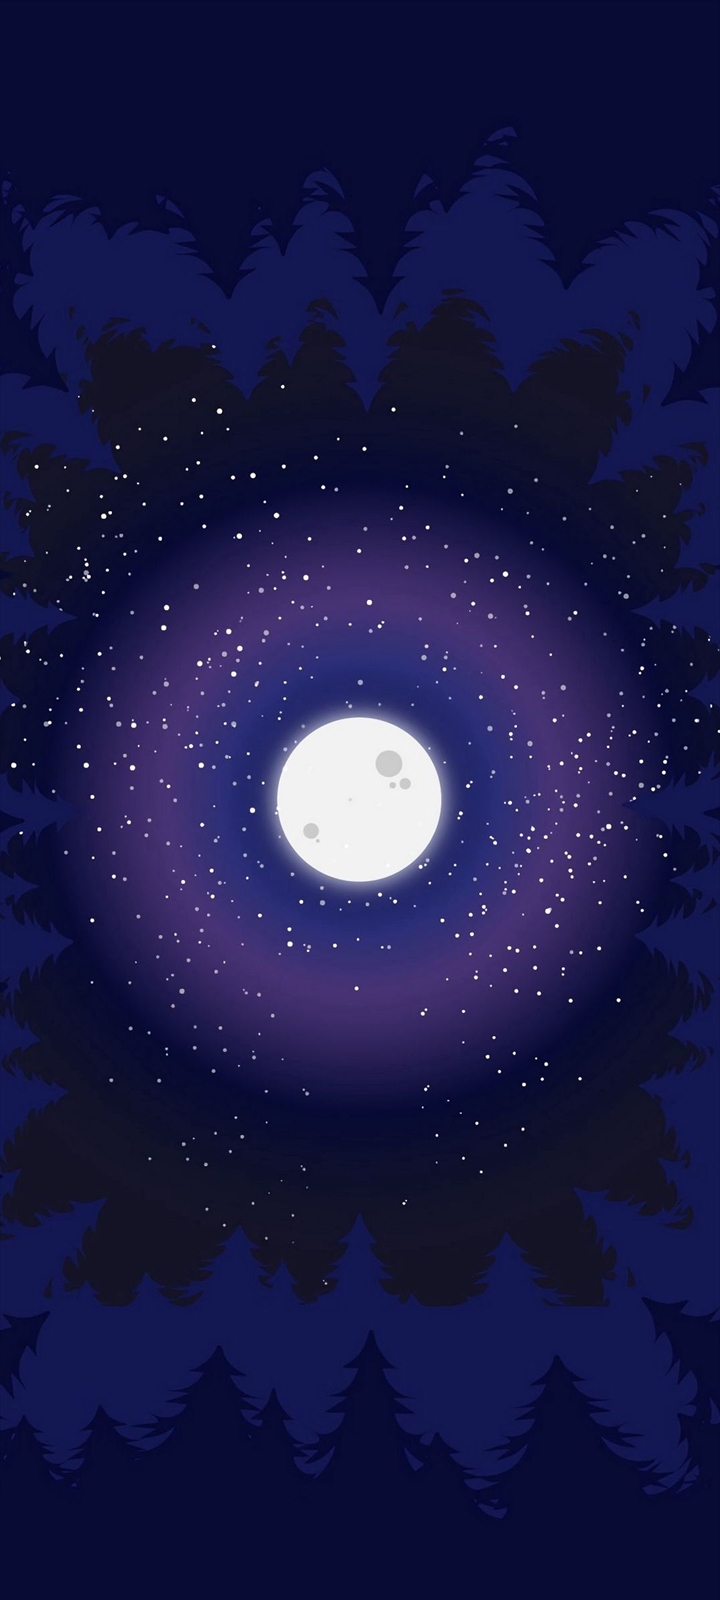 綺麗な月と宇宙のイラスト Moto G9 Play 壁紙 待ち受け スマラン